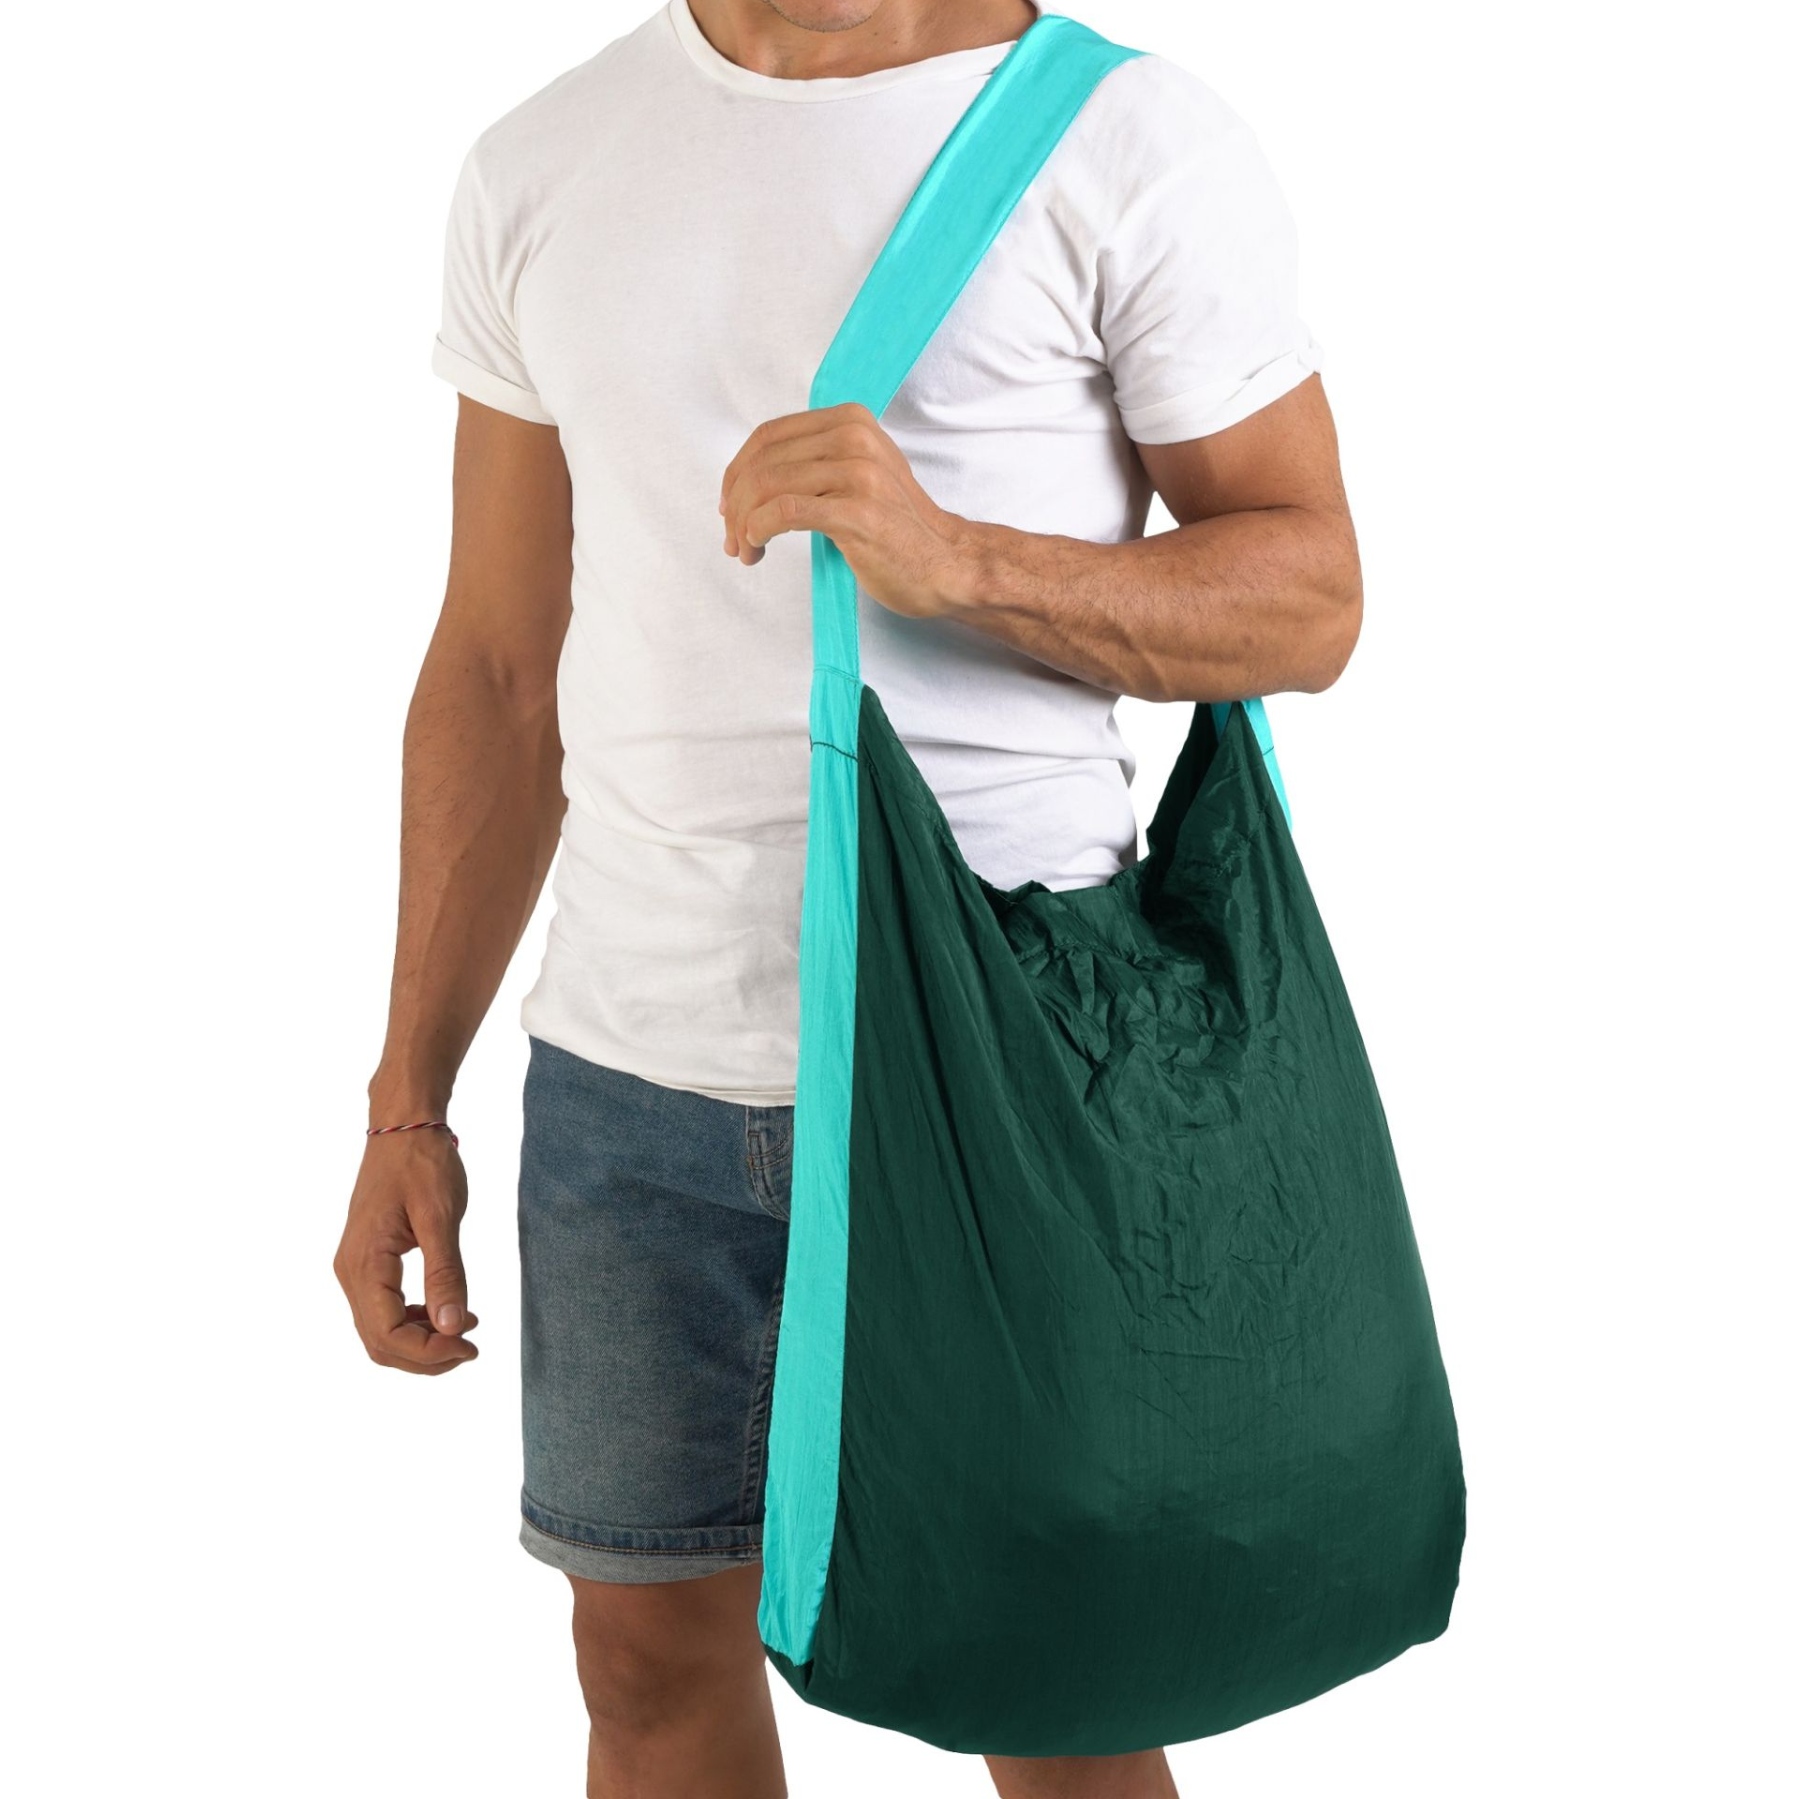 Produktbild von Ticket To The Moon Eco Bag Large - Einkaufstasche - Dark Green / Turquoise